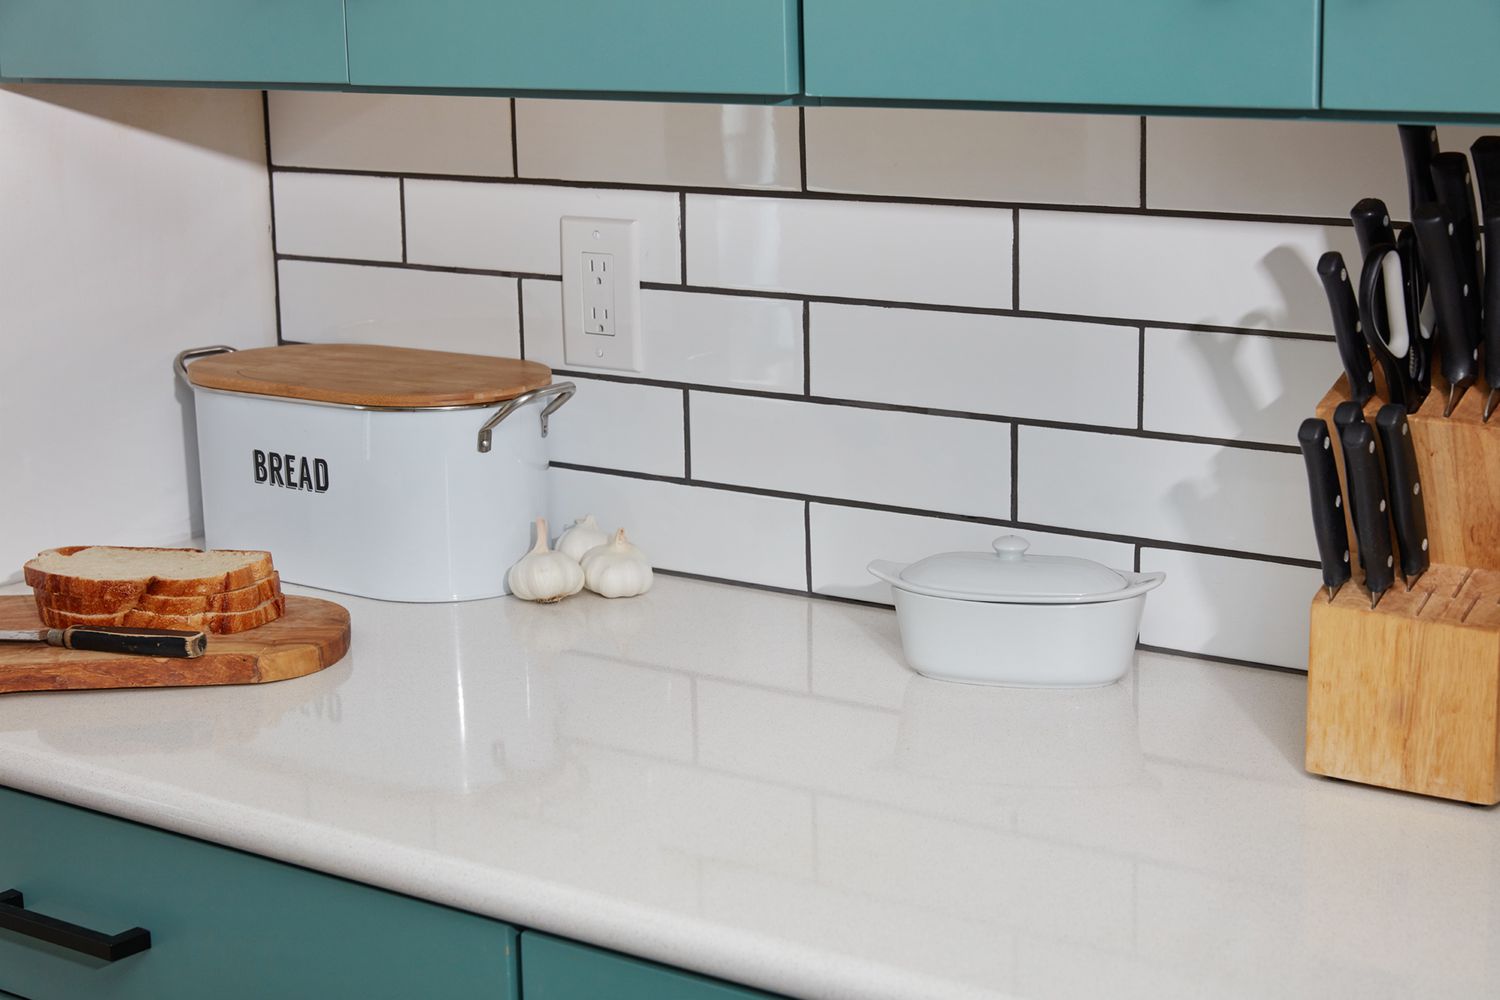 Azulejos blancos de cocina utilizados como backsplash junto a la caja del pan, el recipiente de la mantequilla y los cuchillos